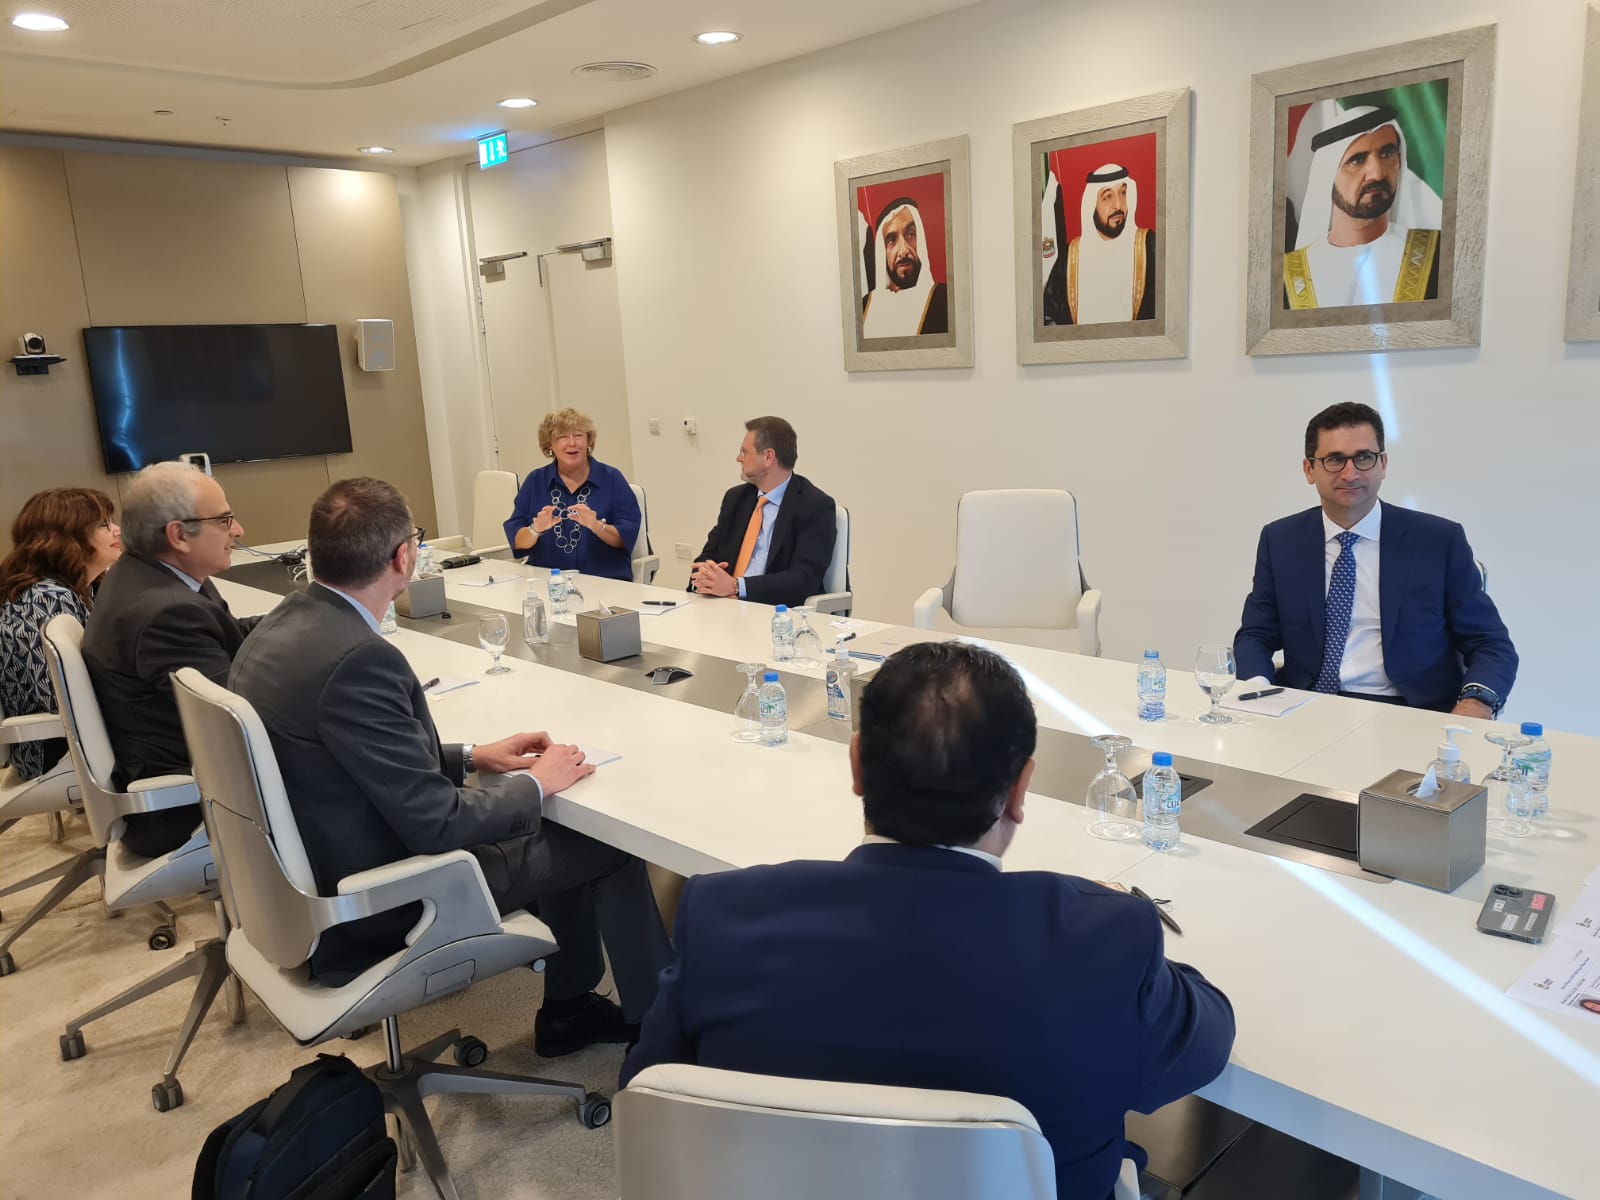 Galleria Emirati Arabi Uniti, continuano gli incontri istituzionali delle delegazioni pugliesi guidate dagli assessori Delli Noci, Maraschio e dal rettore Cupertino - Diapositiva 8 di 10